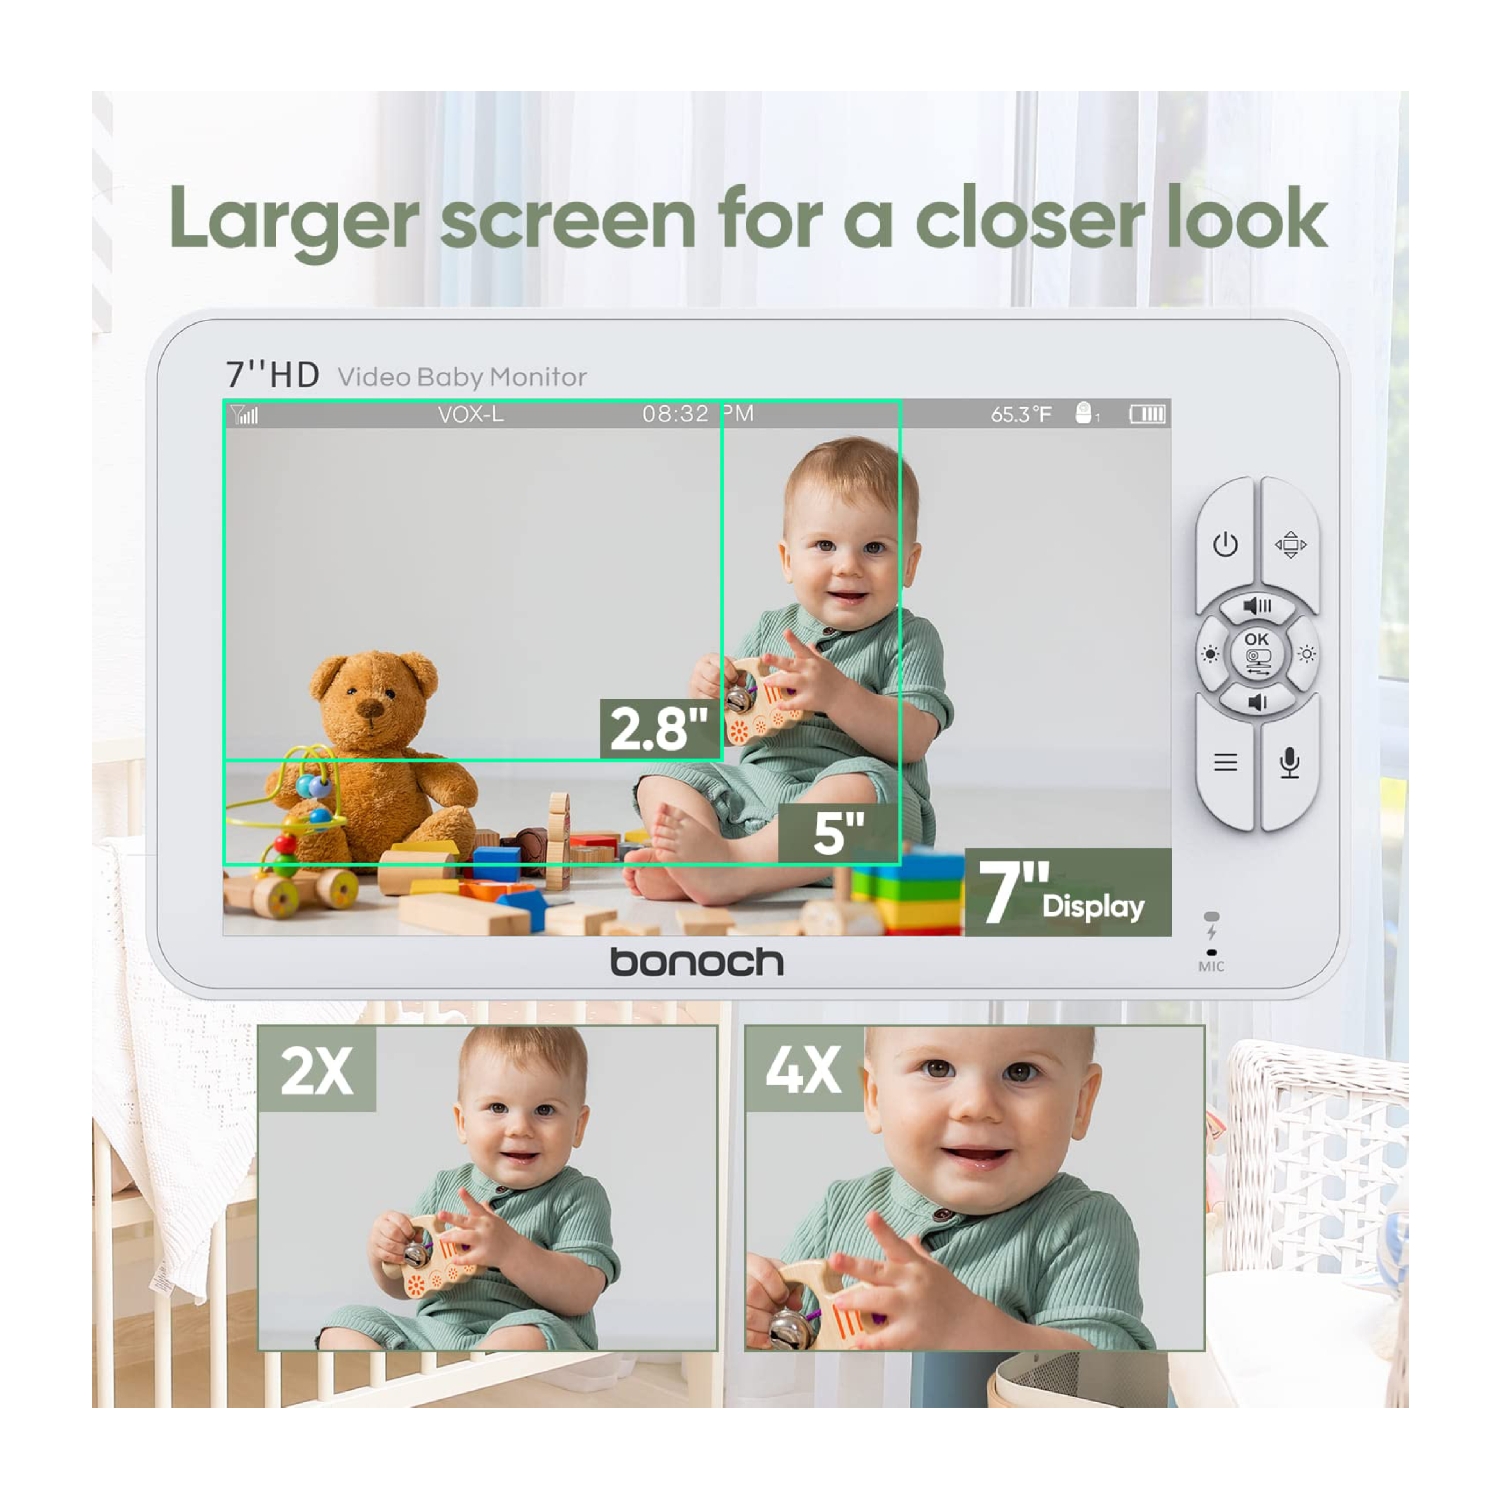 دوربین کنترل کودک bonoch مدل BBM03